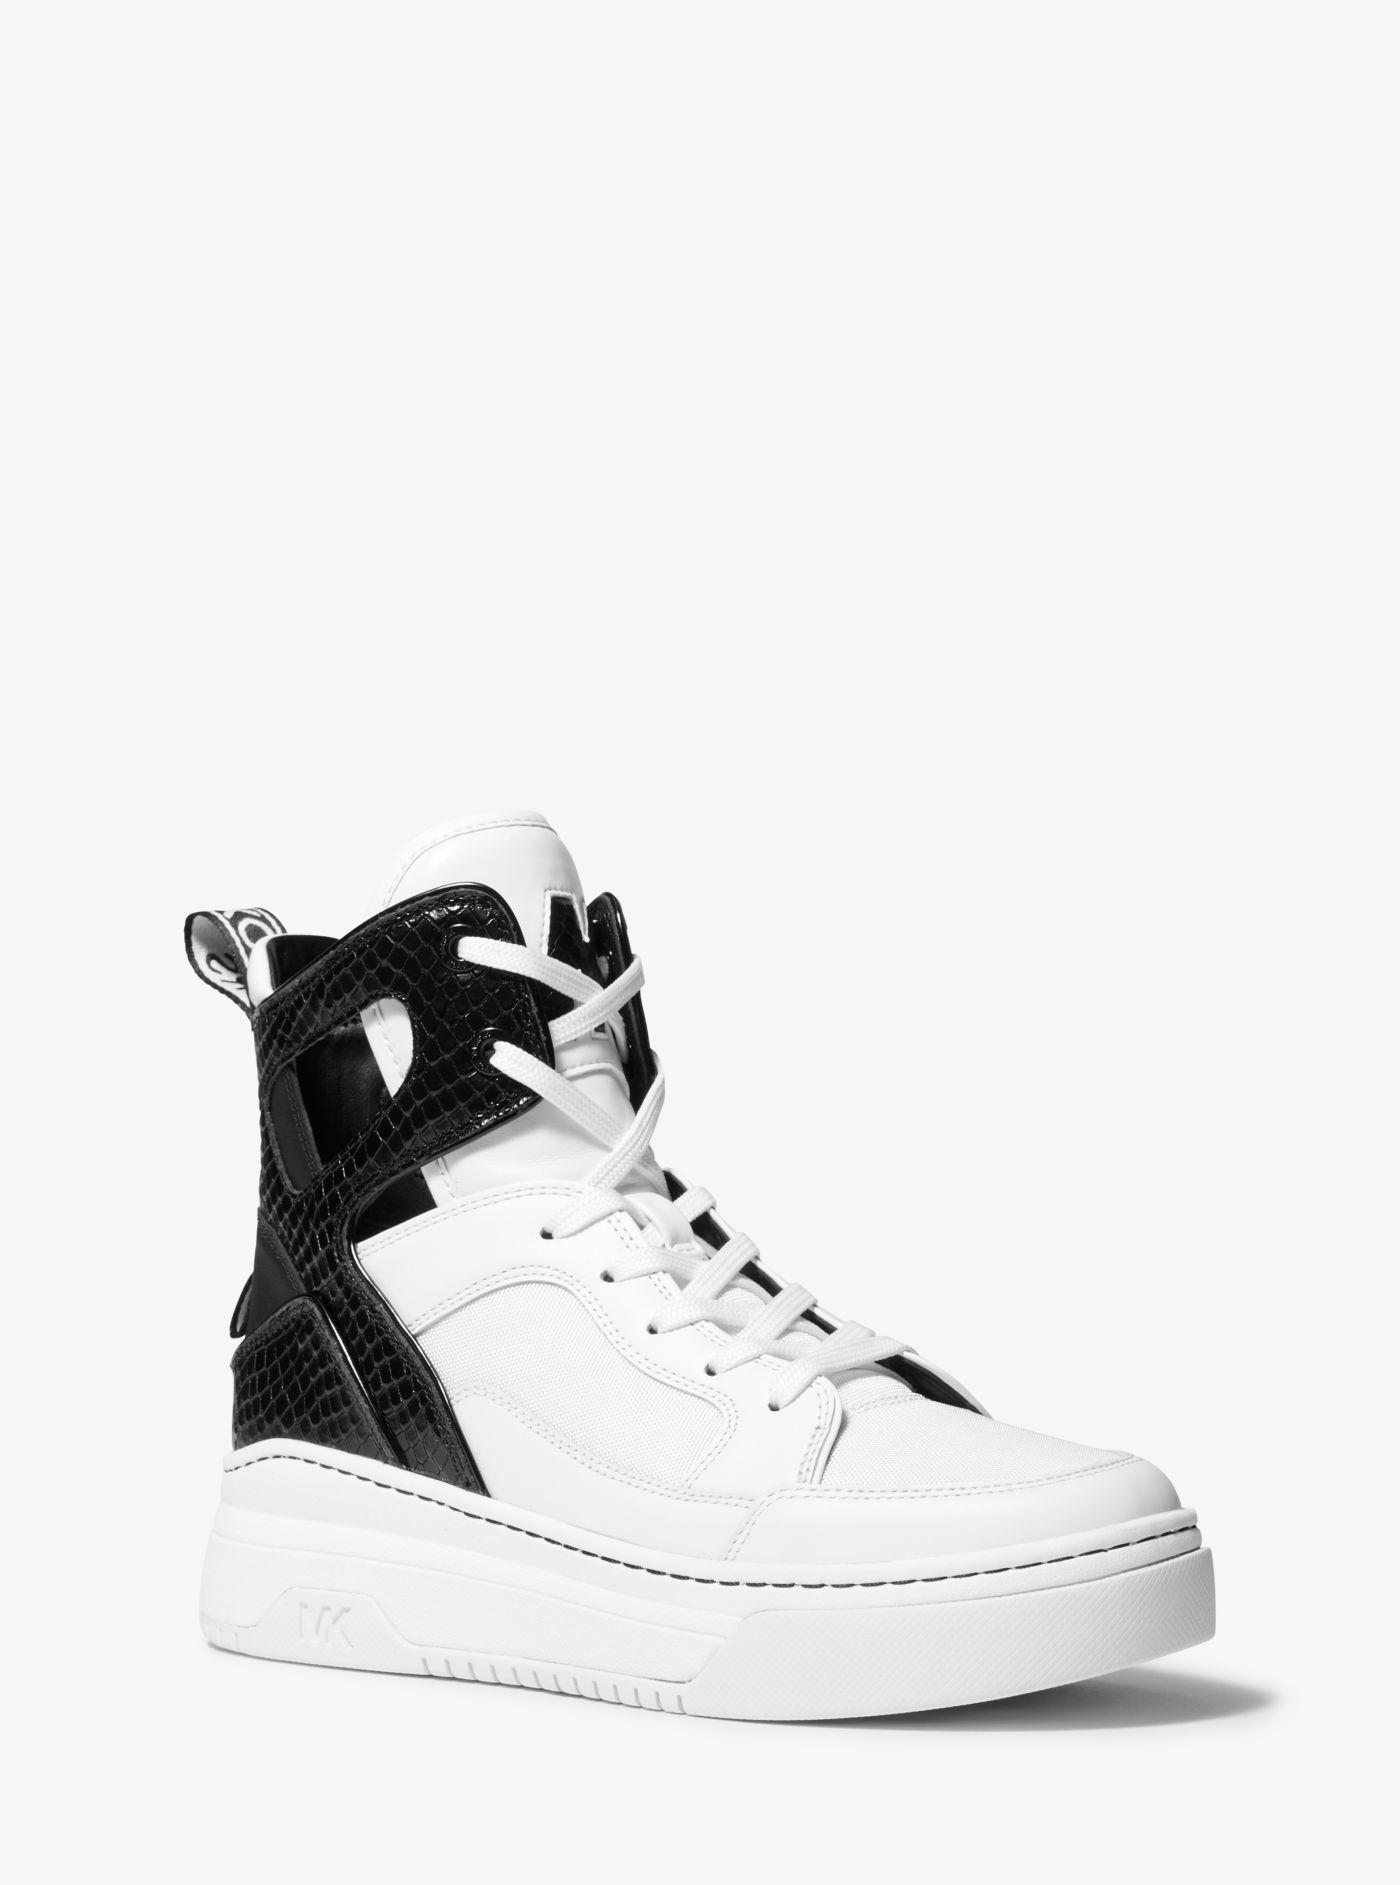 Michael Kors Matson Mixed-media Logo Tape High-top Sneaker in White | Lyst